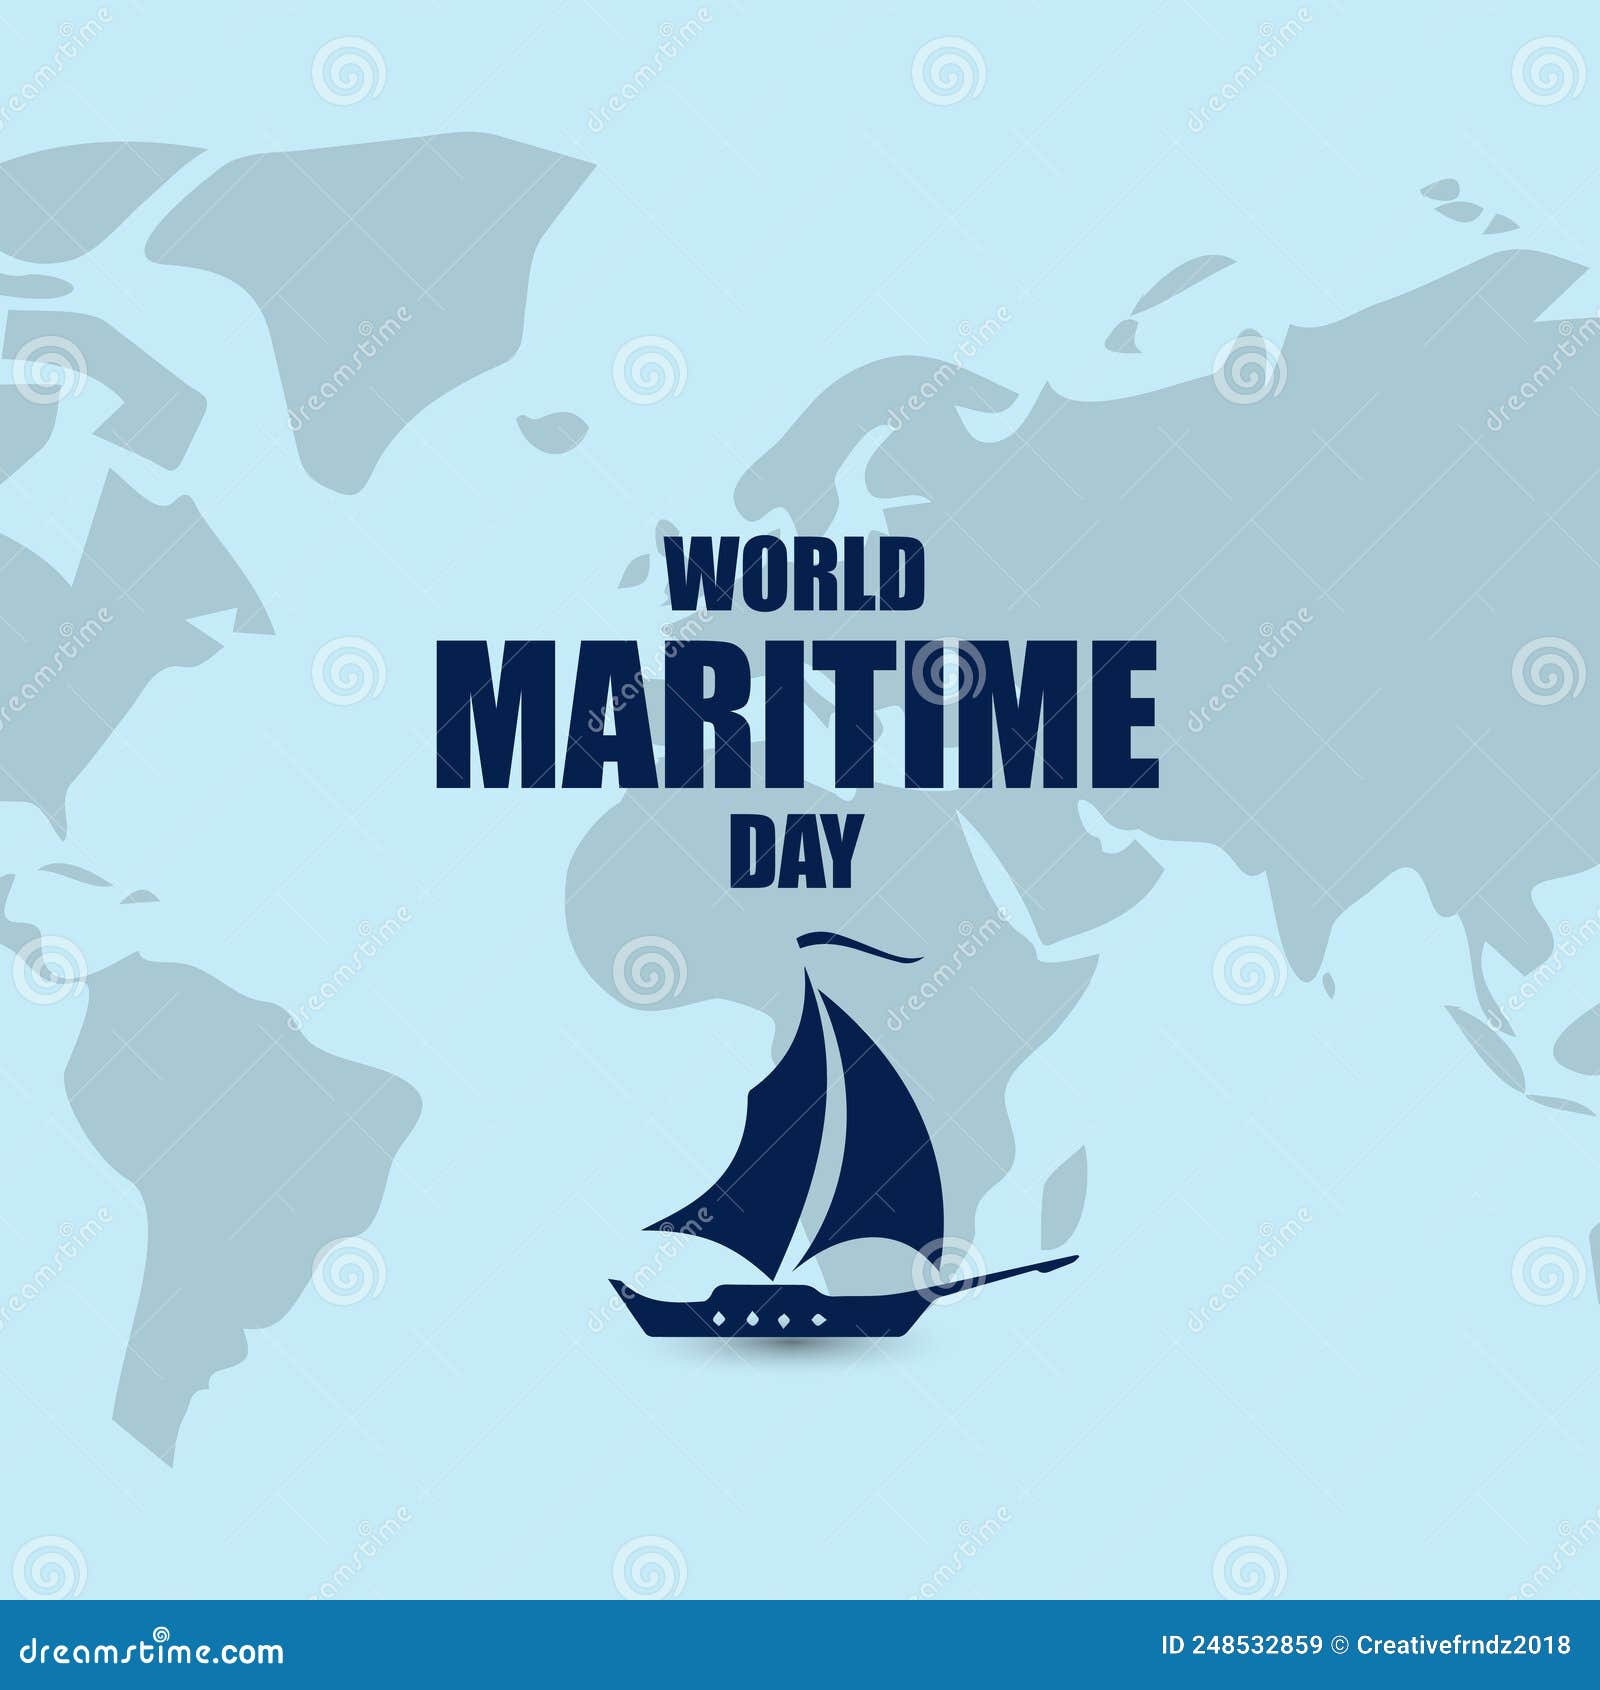 World Maritime Day Banner Design Stock Vector - Illustration of ...